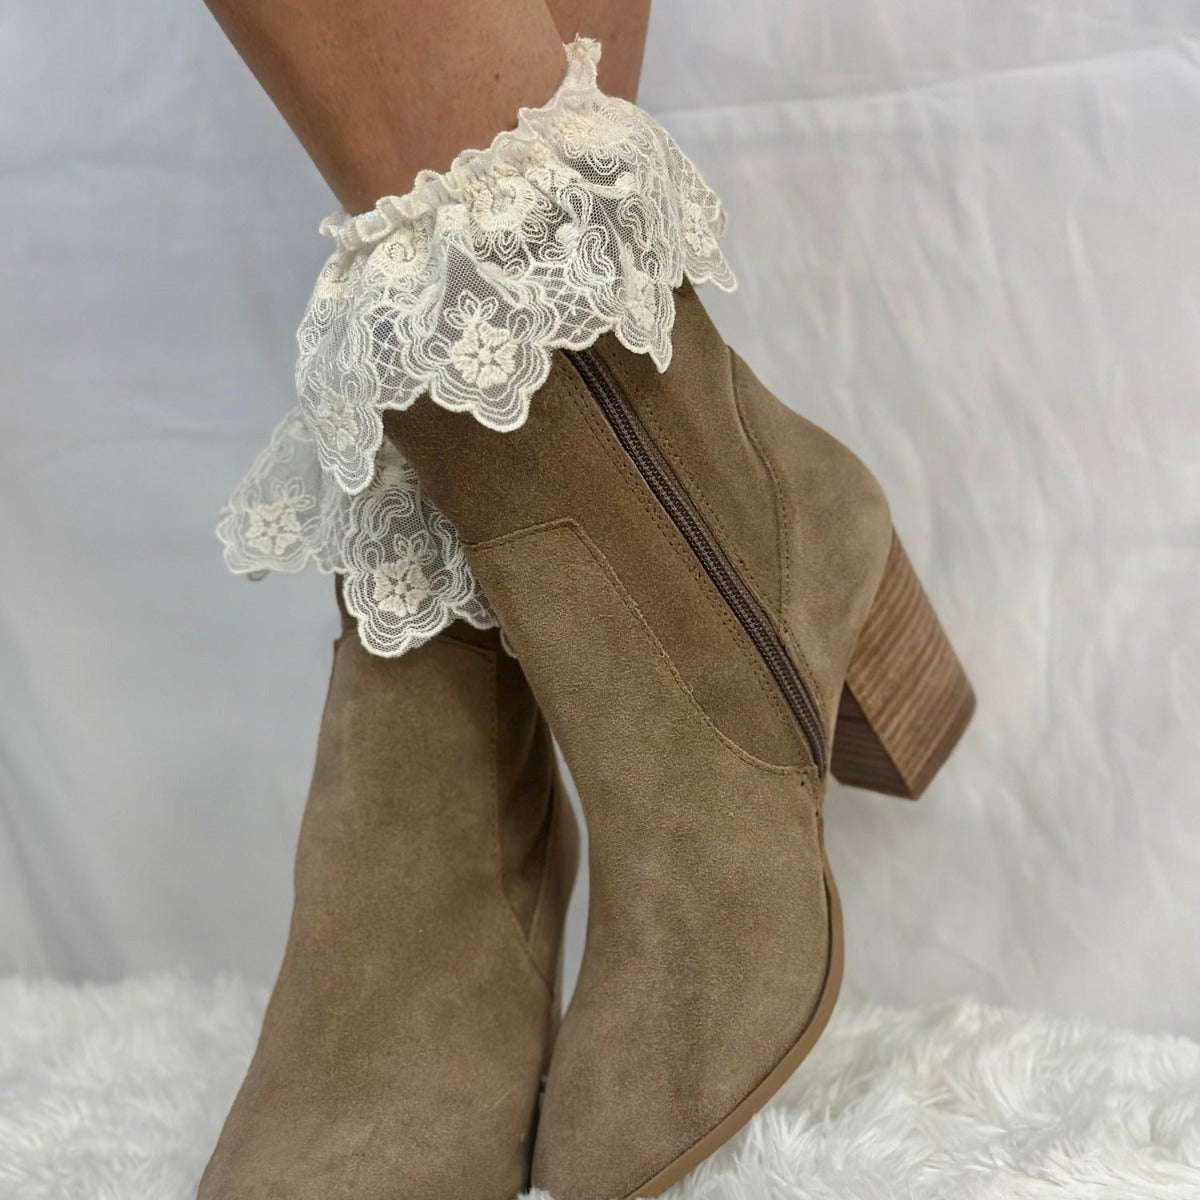 FLORAL crochet socks for women, lace ruffle sock women, lace socks boots, ladies socks lace trim